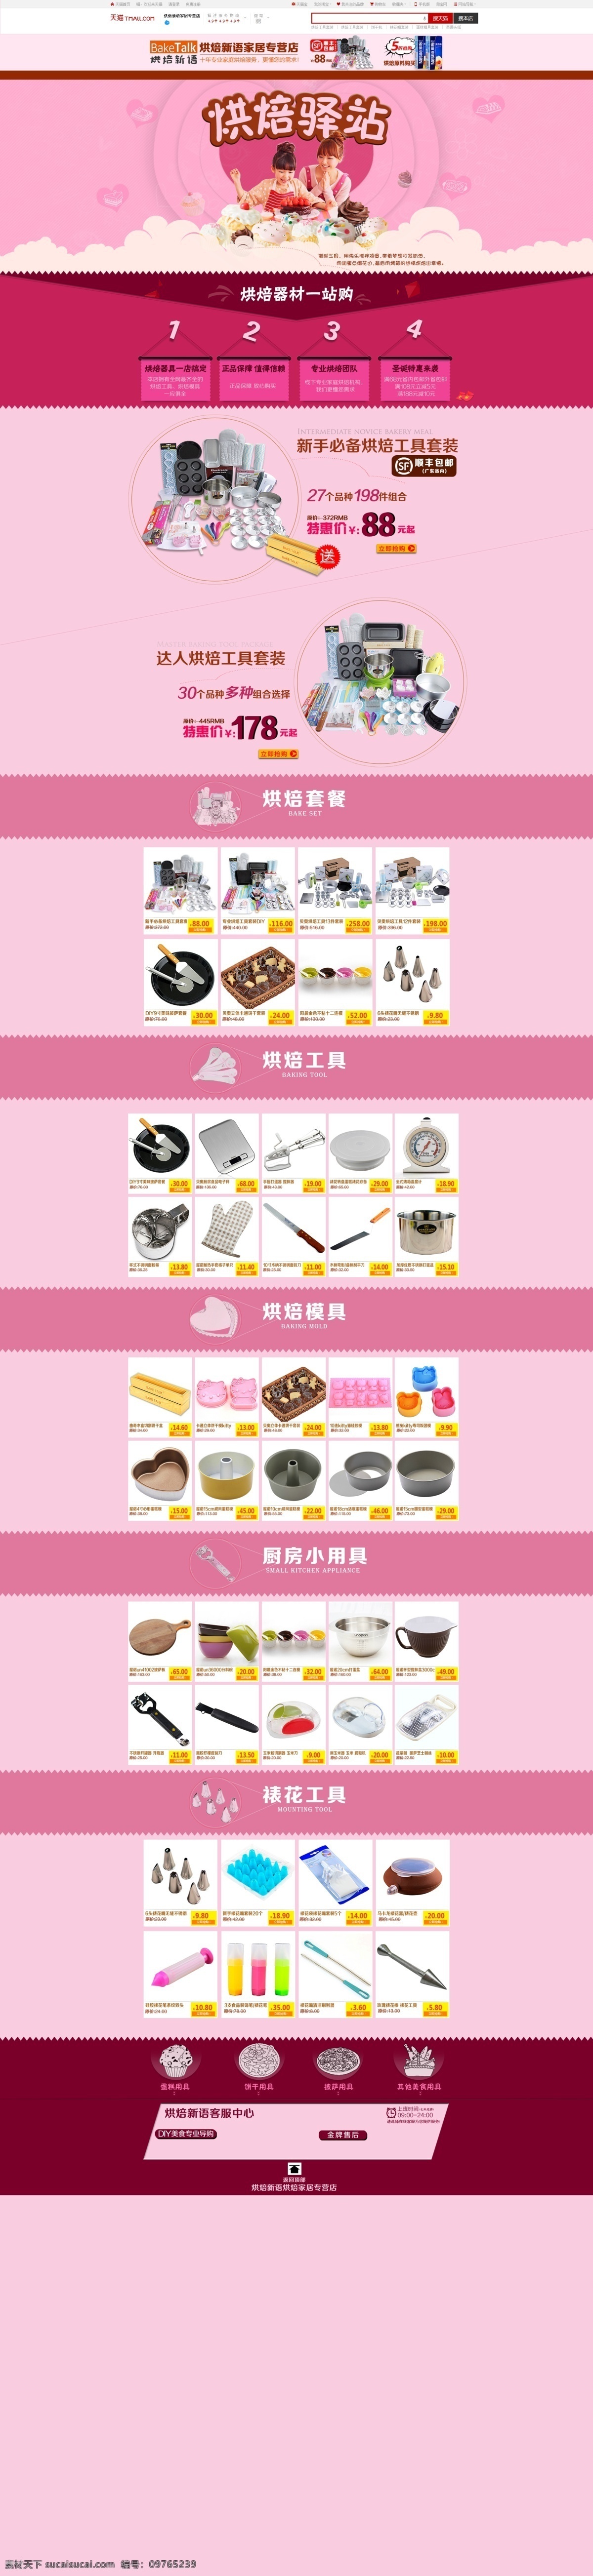 烘焙驿站 烘焙 首页 家庭烘焙 蛋糕 网页设计 web 界面设计 中文模板